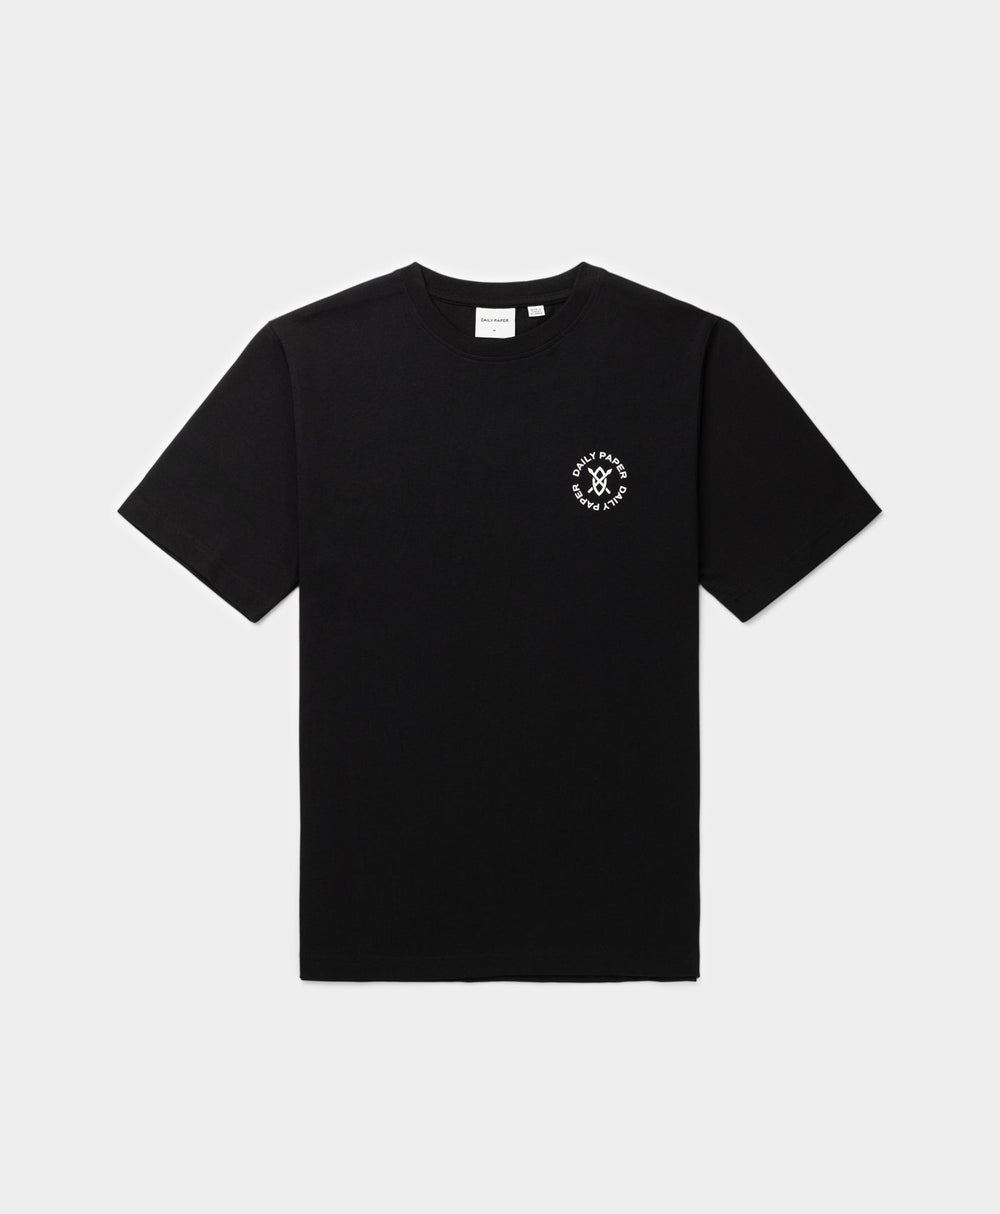 DP - Black Circle T-Shirt - Packshot - Front